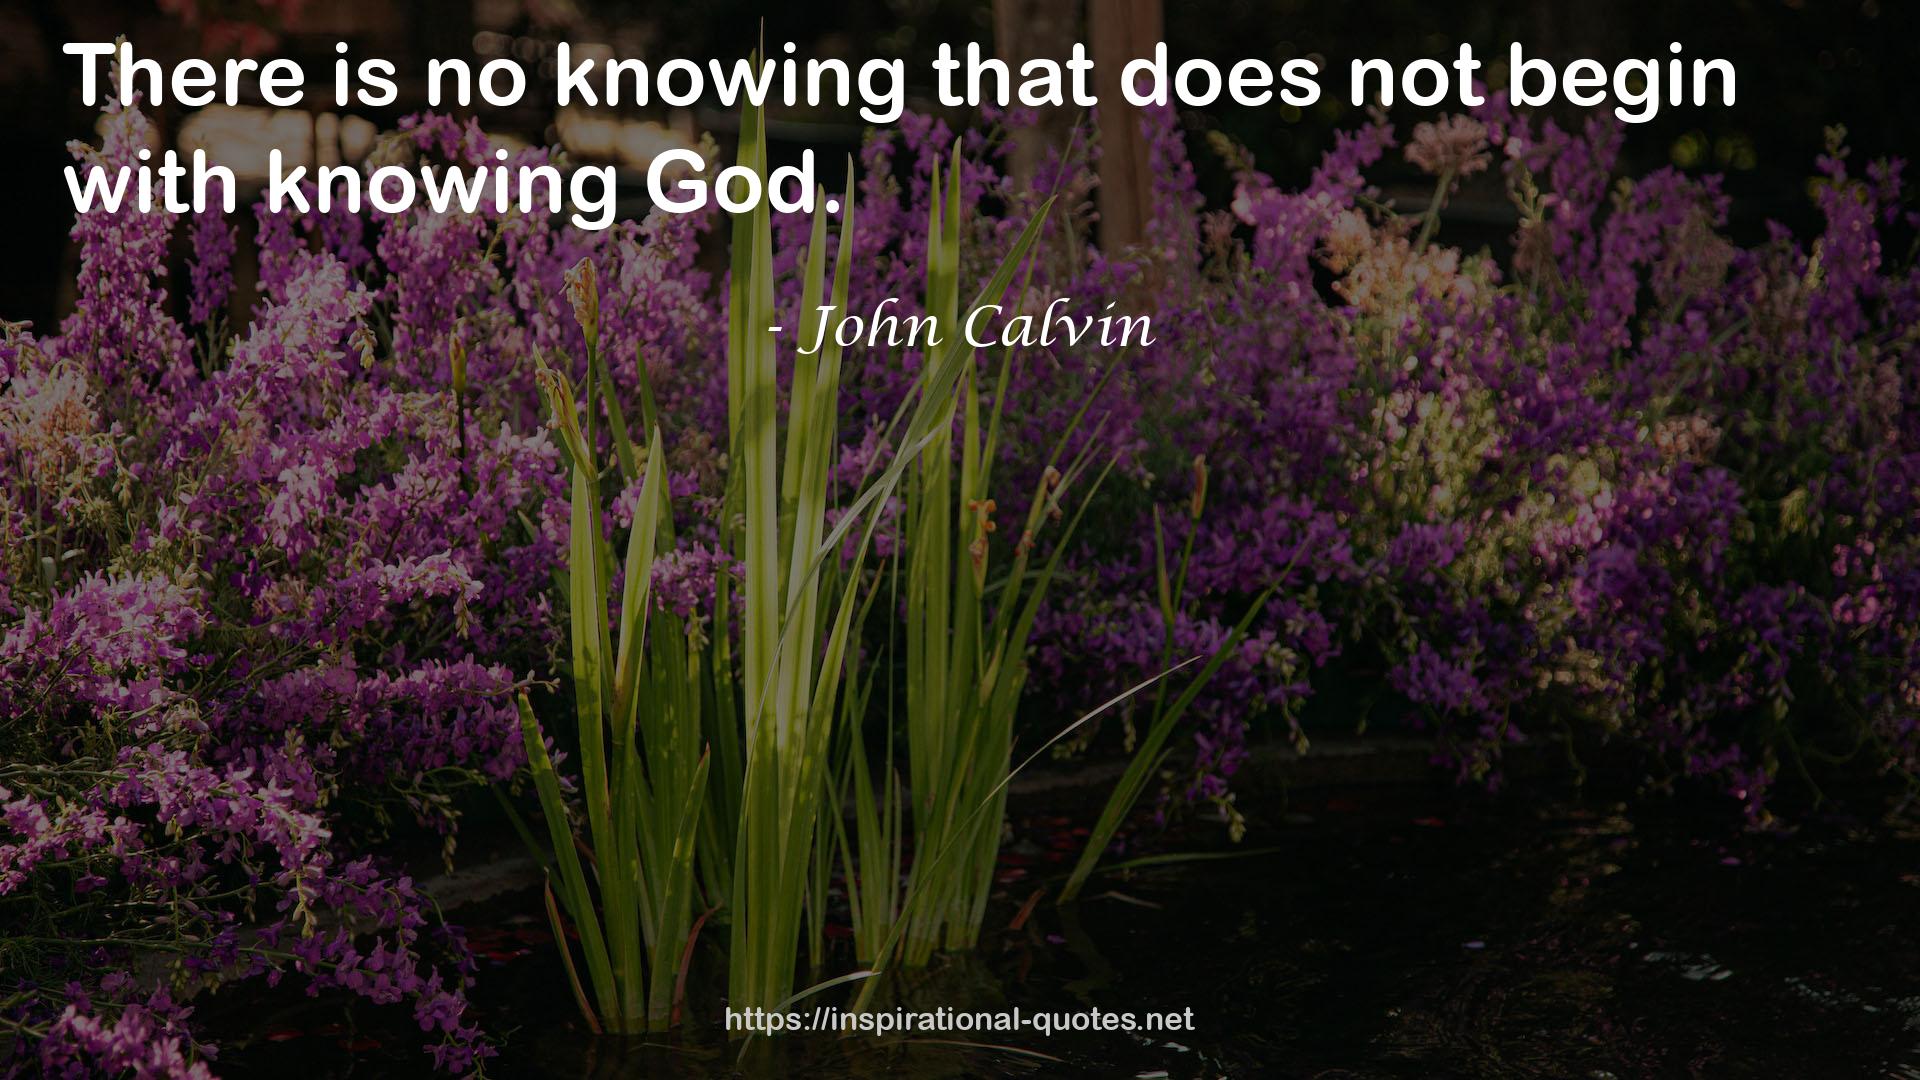 John Calvin QUOTES